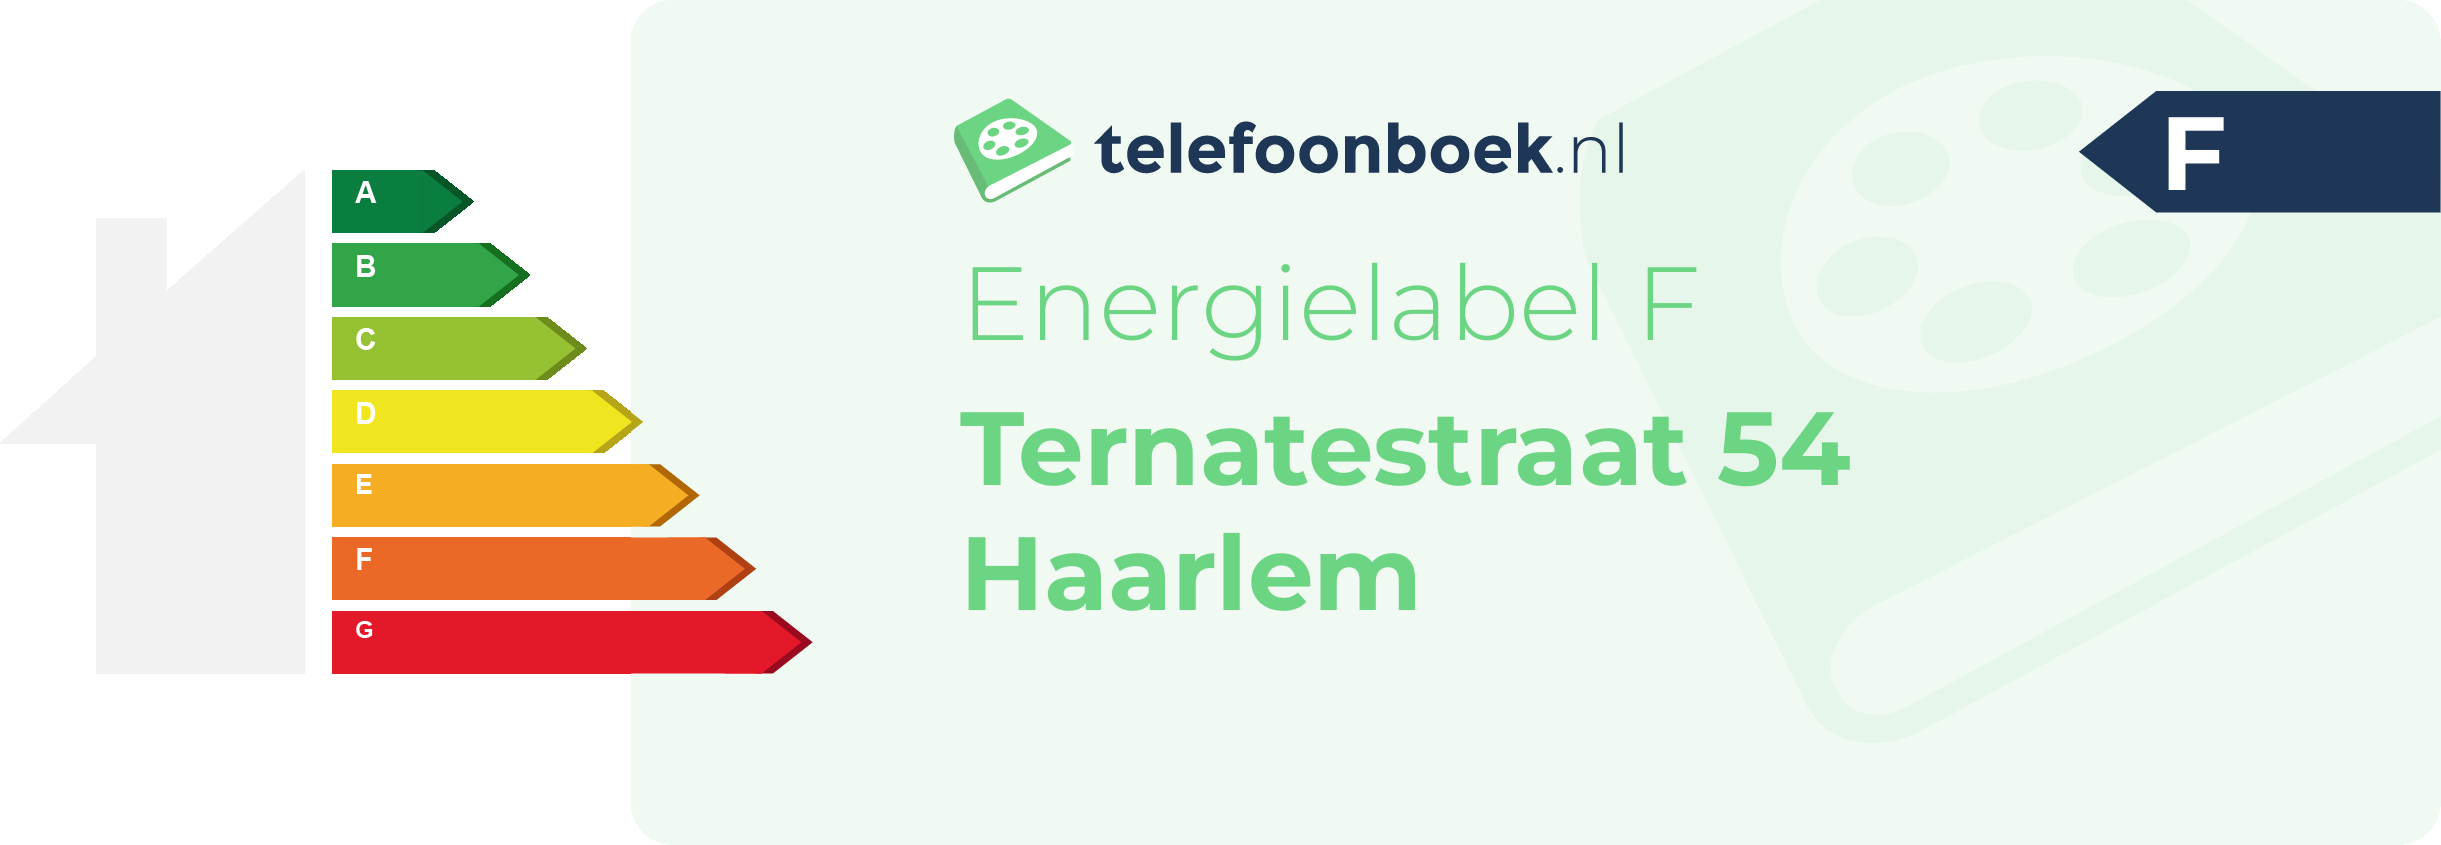 Energielabel Ternatestraat 54 Haarlem